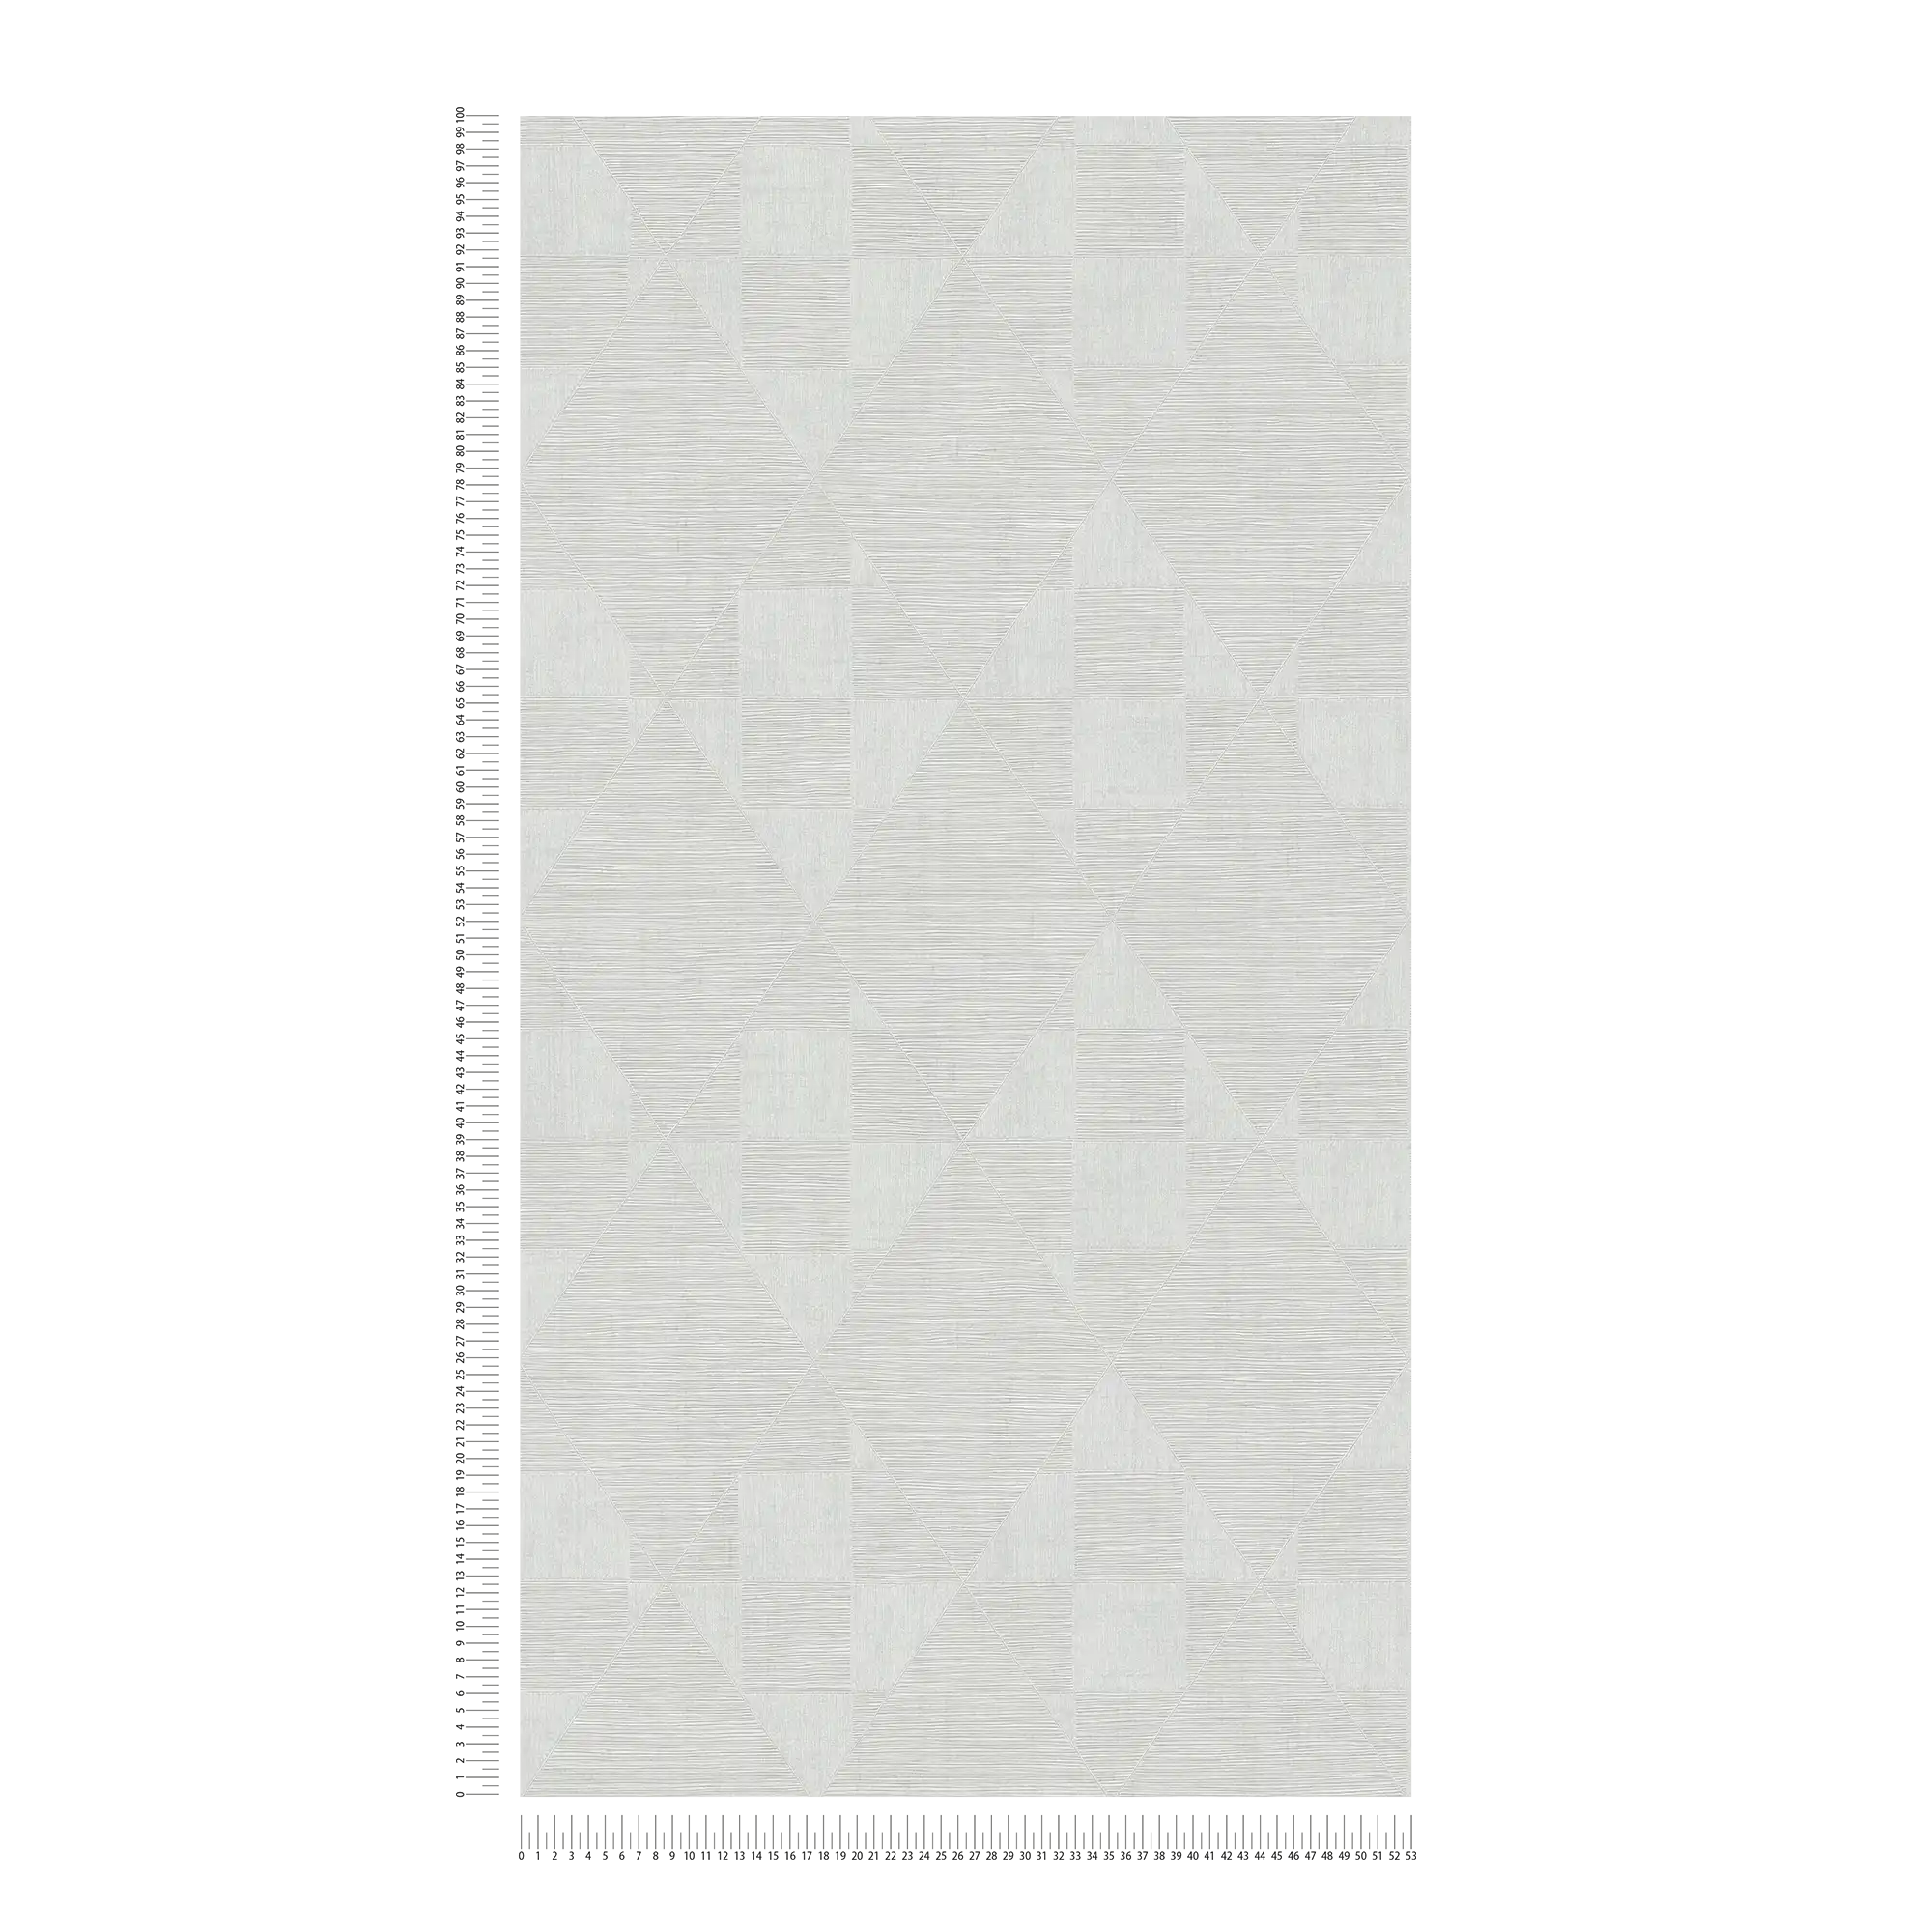             Retro wallpaper with metallic texture design - grey, white
        